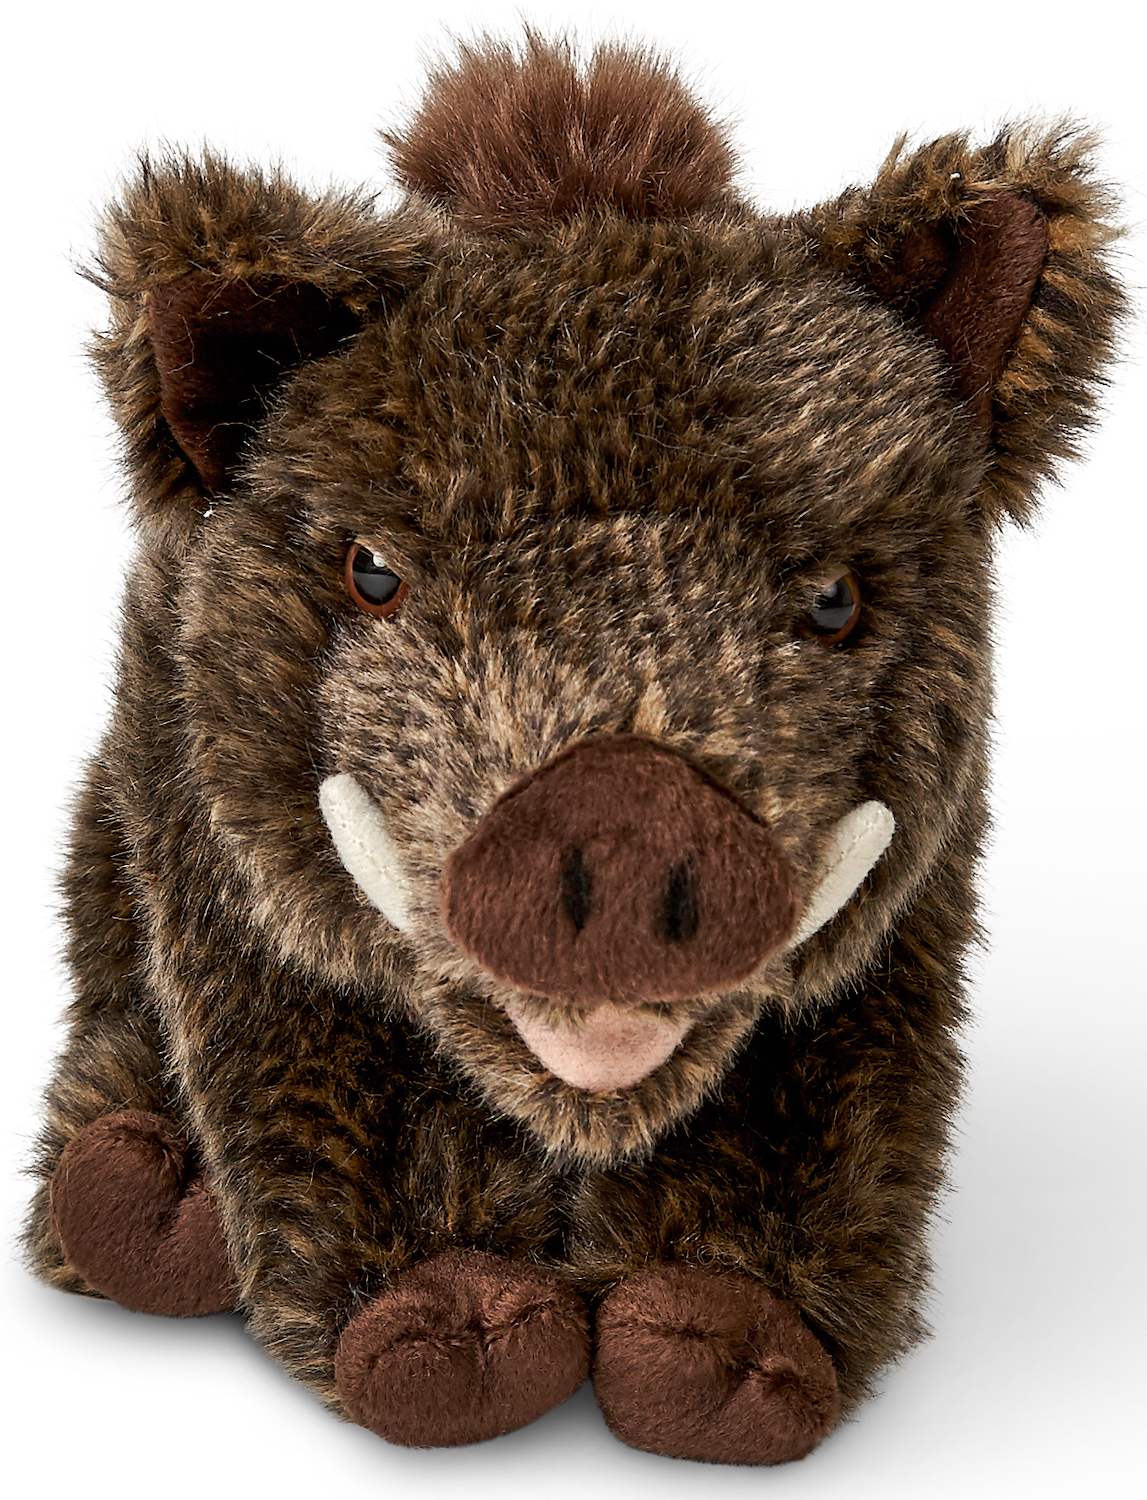 Boar, sitting - 18 cm (height) - plush pig, boar - soft toy, cuddly toy